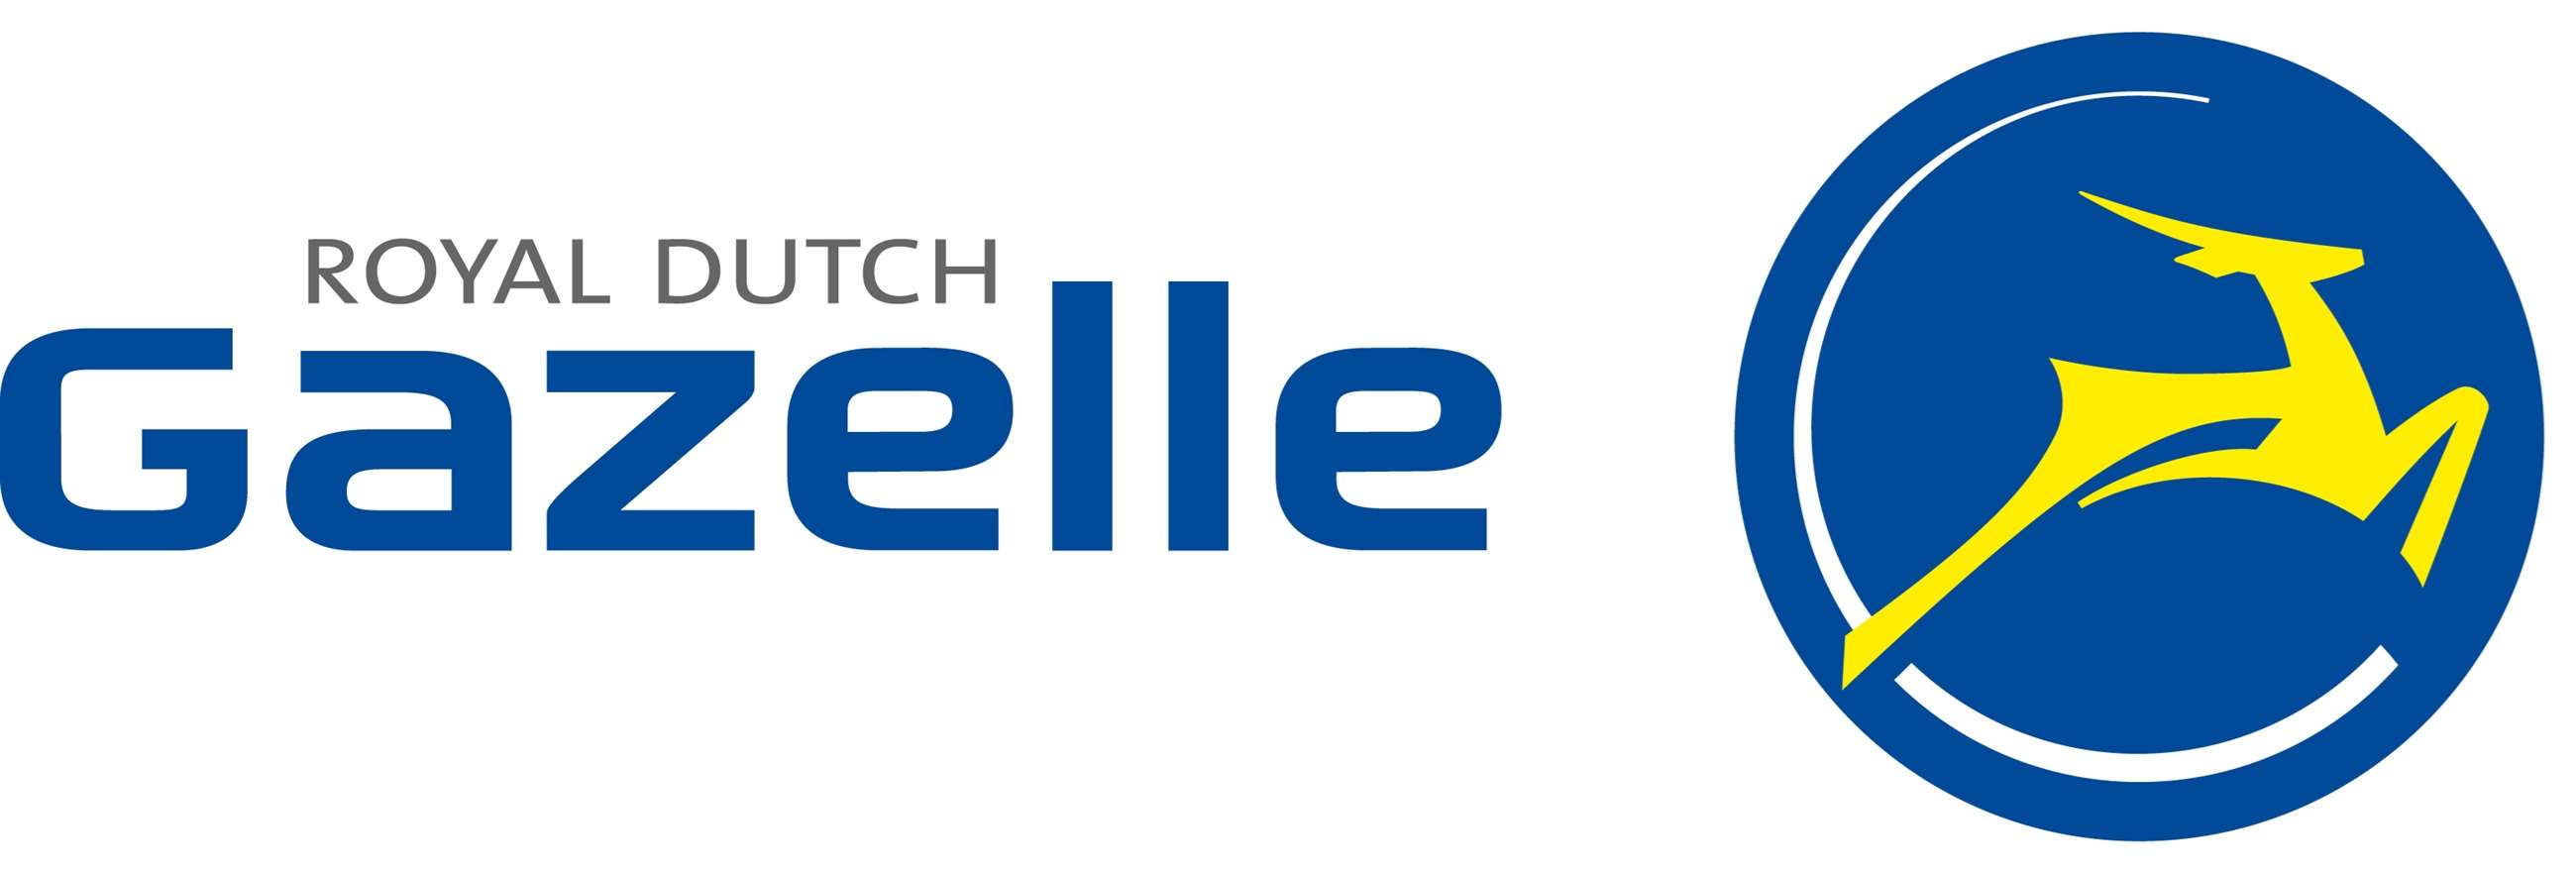 royal_dutch_gazelle_logo_hor_rgb